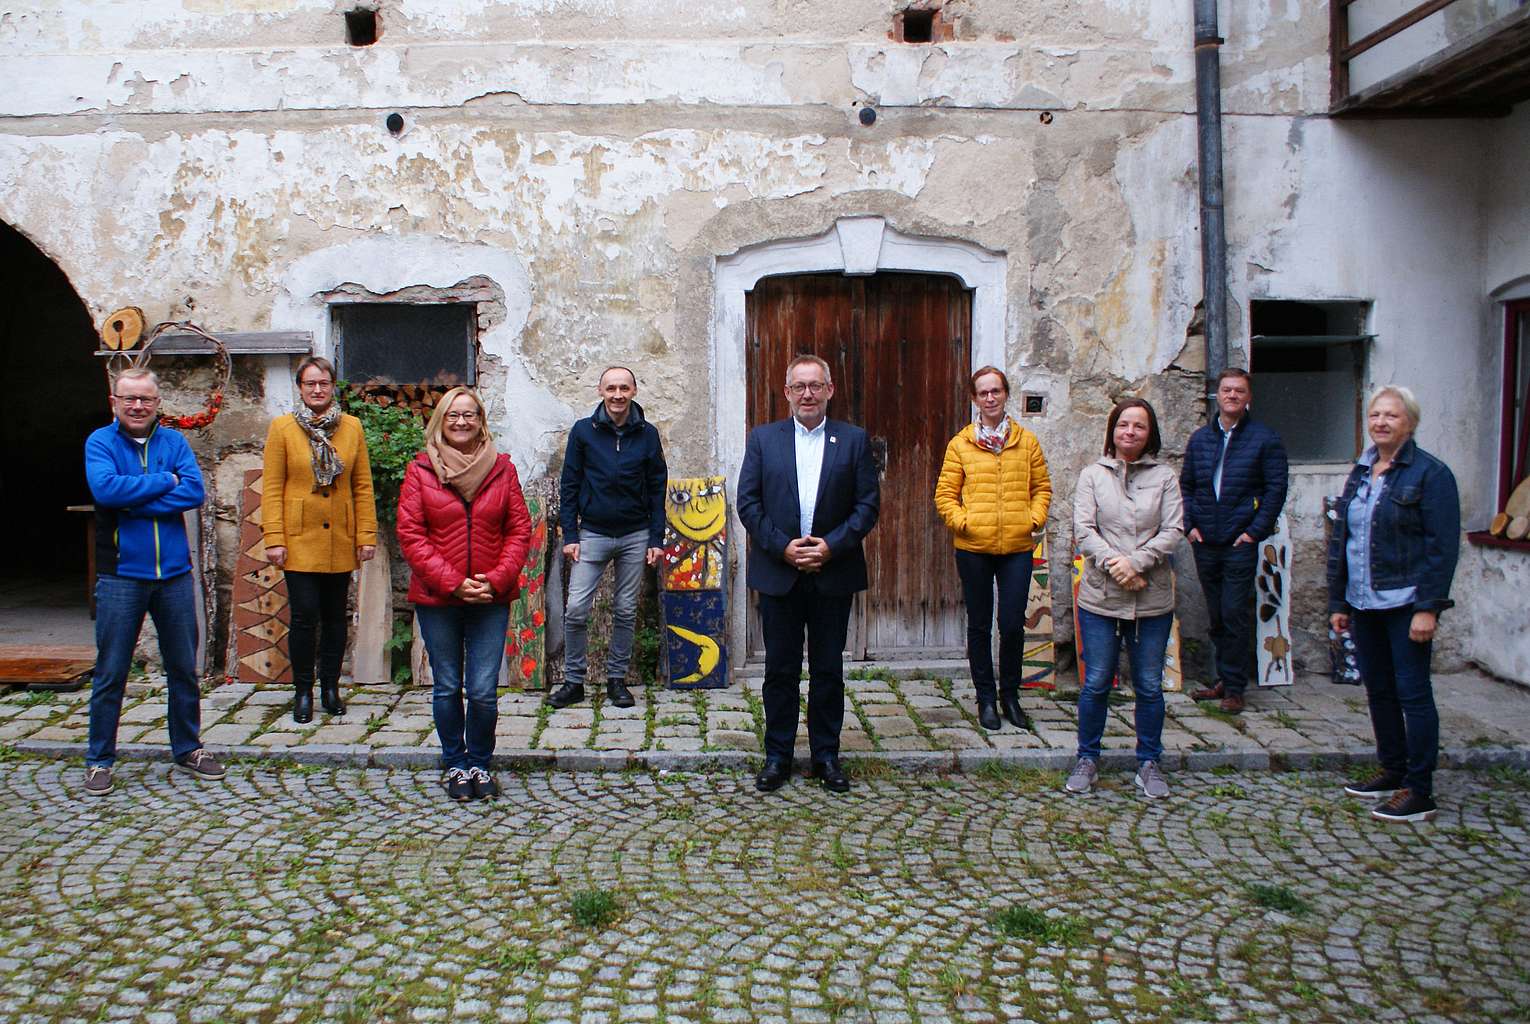 Gruppenfoto einer Exkursionsgruppe, 10 Personen, vor altem Haus mit bröckelnder Fassade